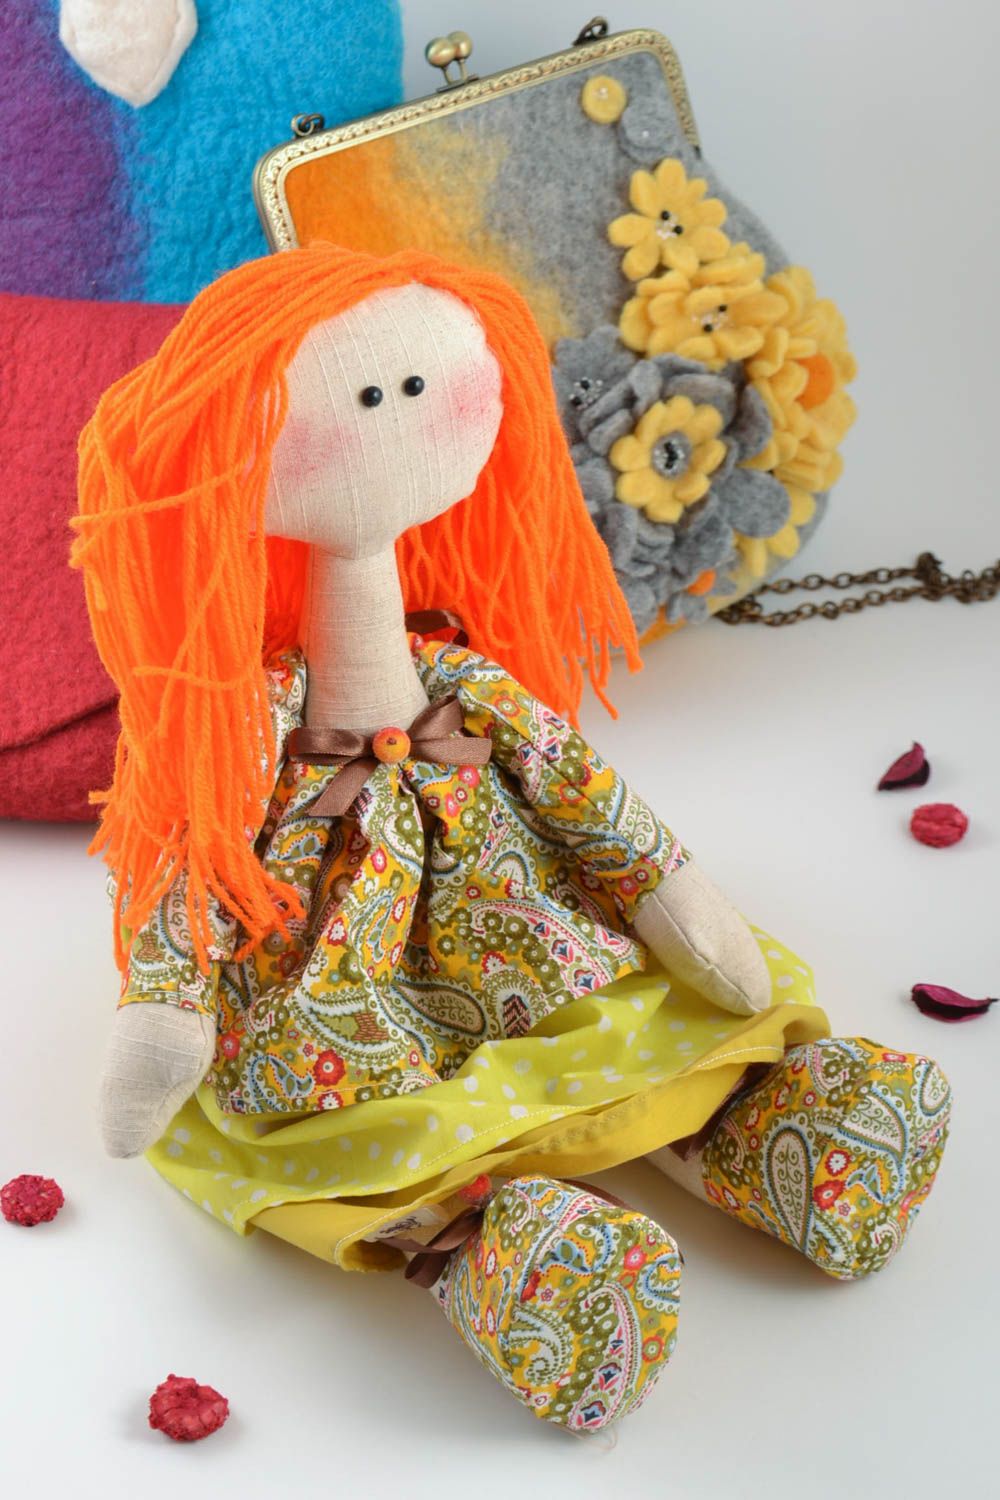 Авторская тканевая кукла с рыжими волосами мягкая игрушка ручной работы фото 1